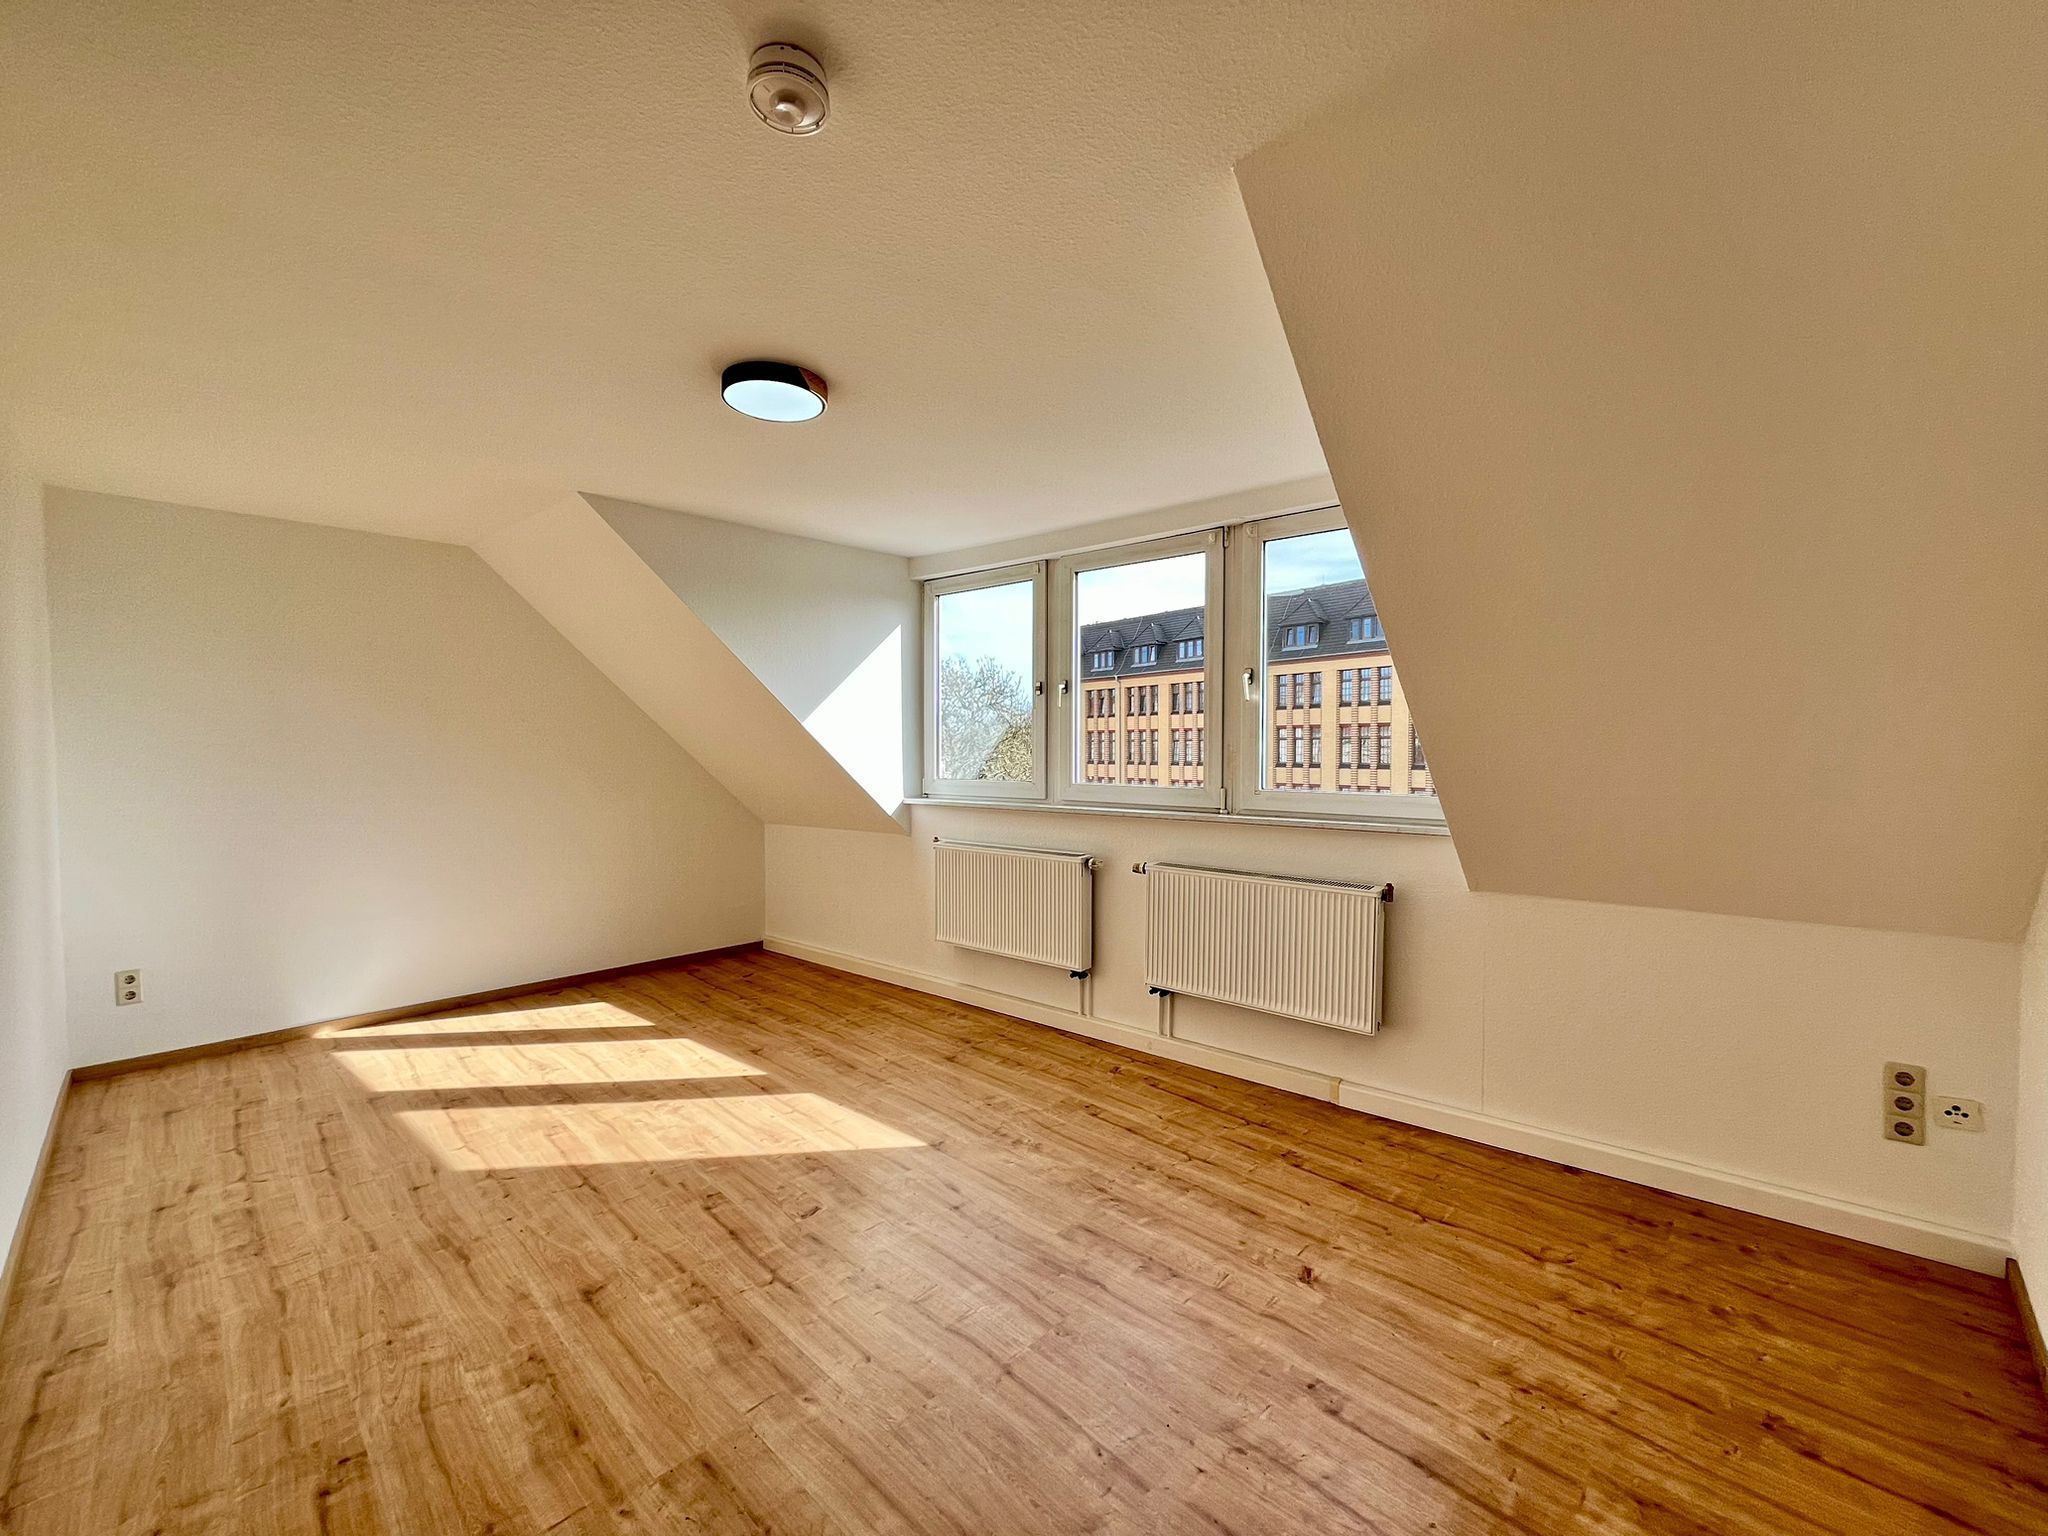 gemütliche 2- Raumwohnung im Dachgeschoss in der Görlitzer Südstadt ! 02826 Görlitz, Dachgeschosswohnung